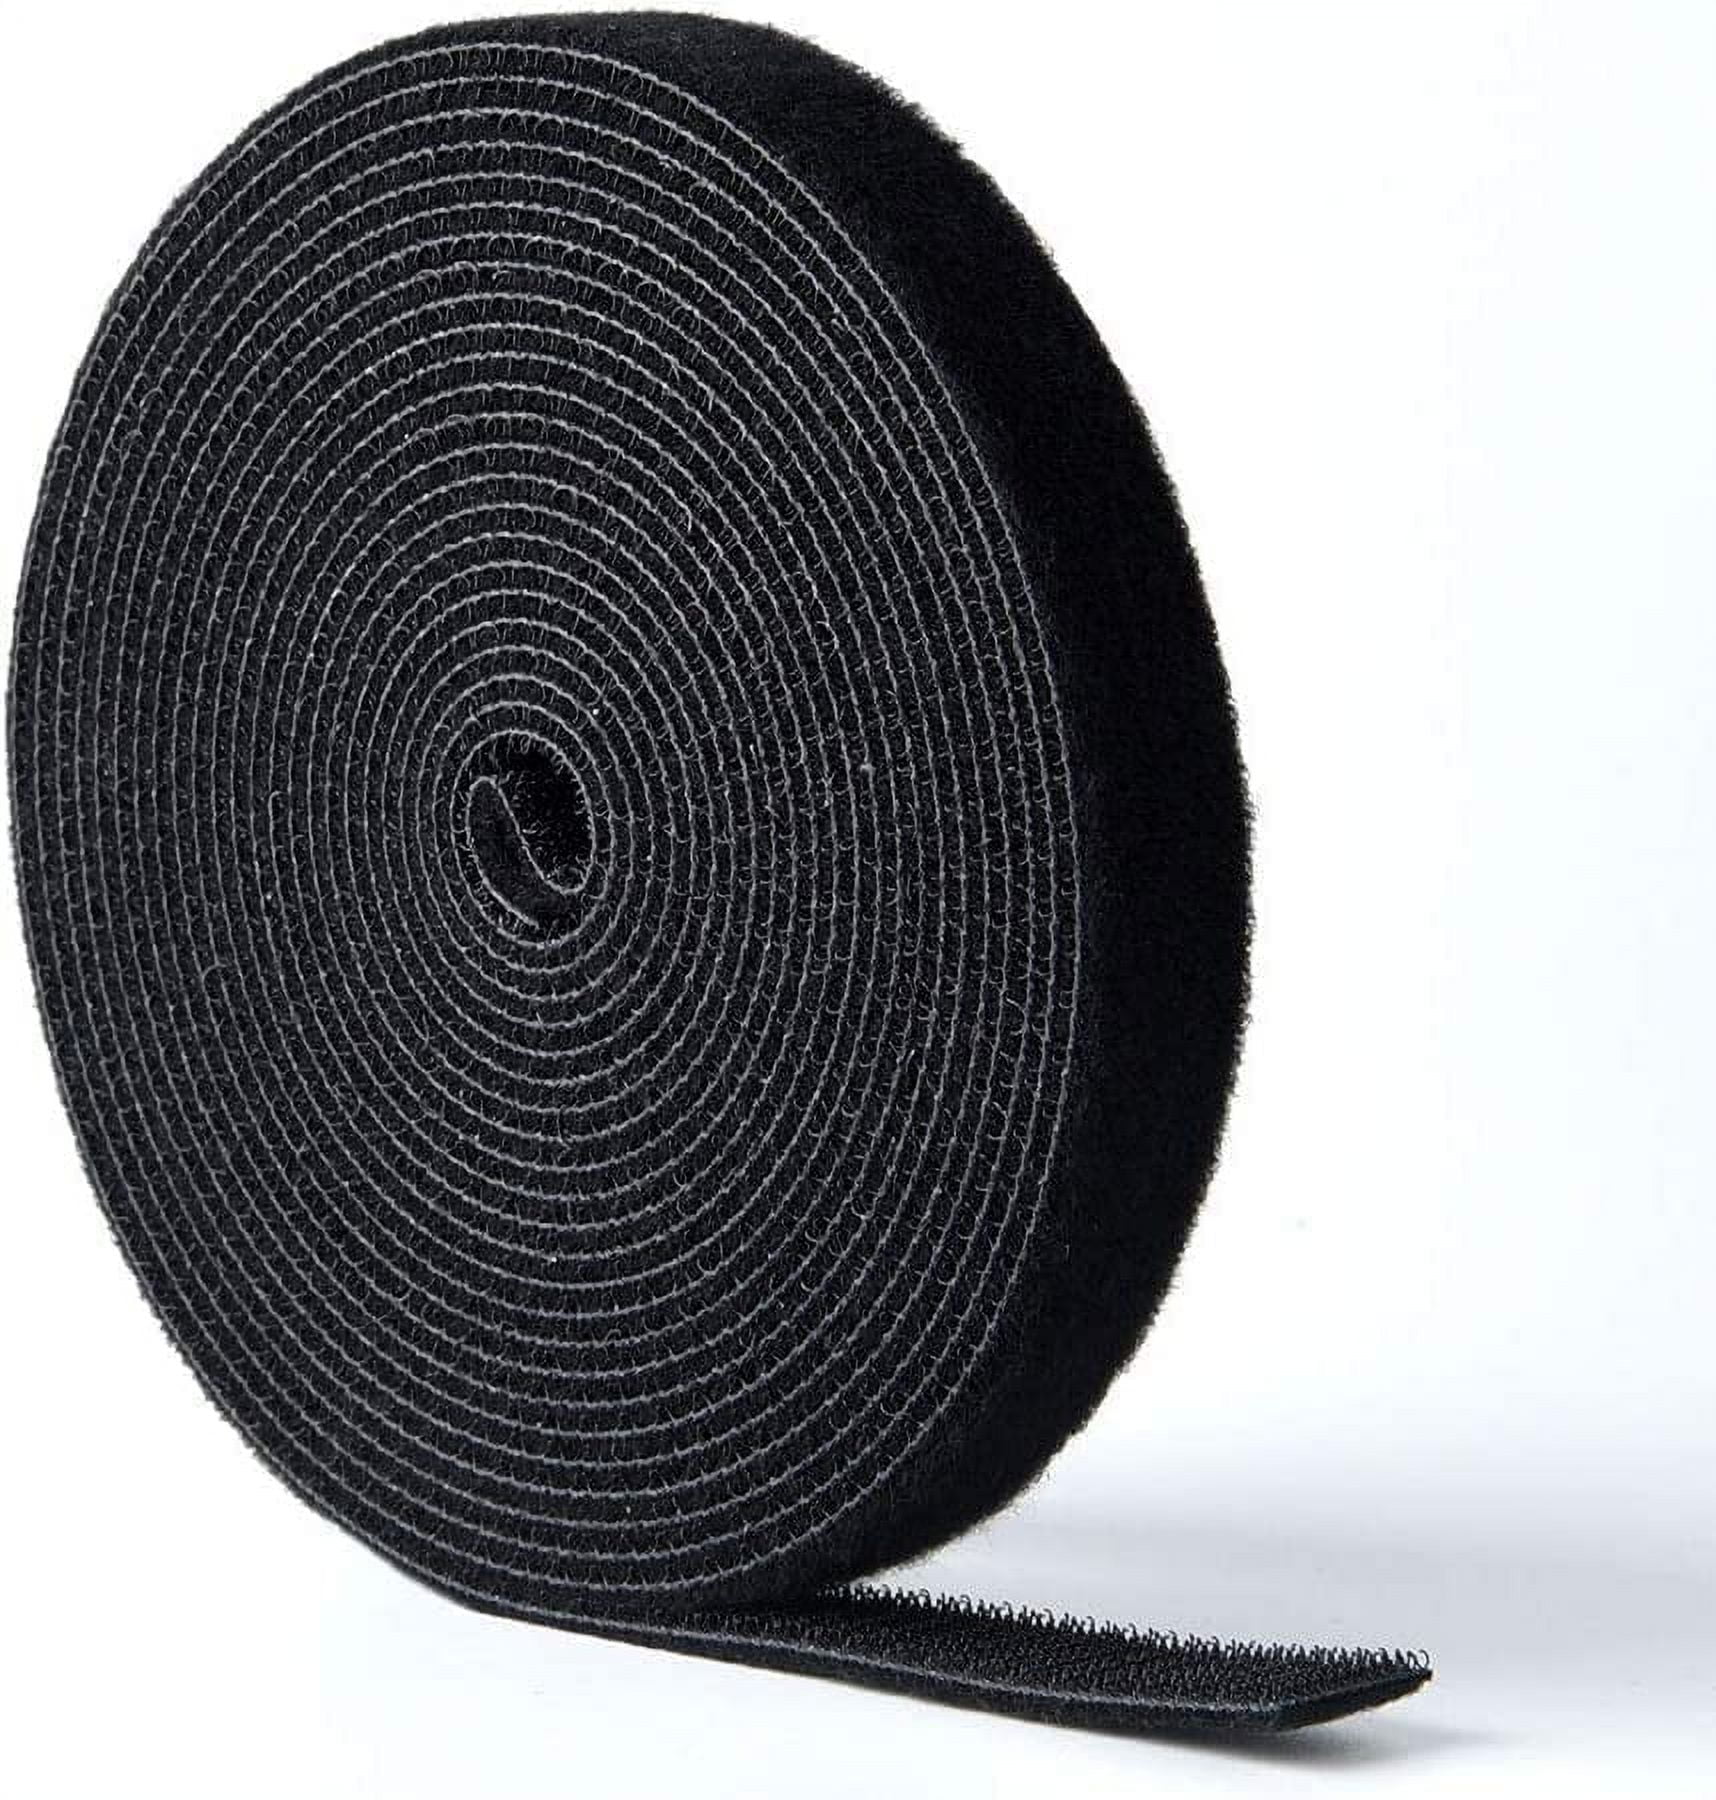 1 Black Adhesive Hook and Loop Tape, 5 Yards - Secure™ Cable Ties